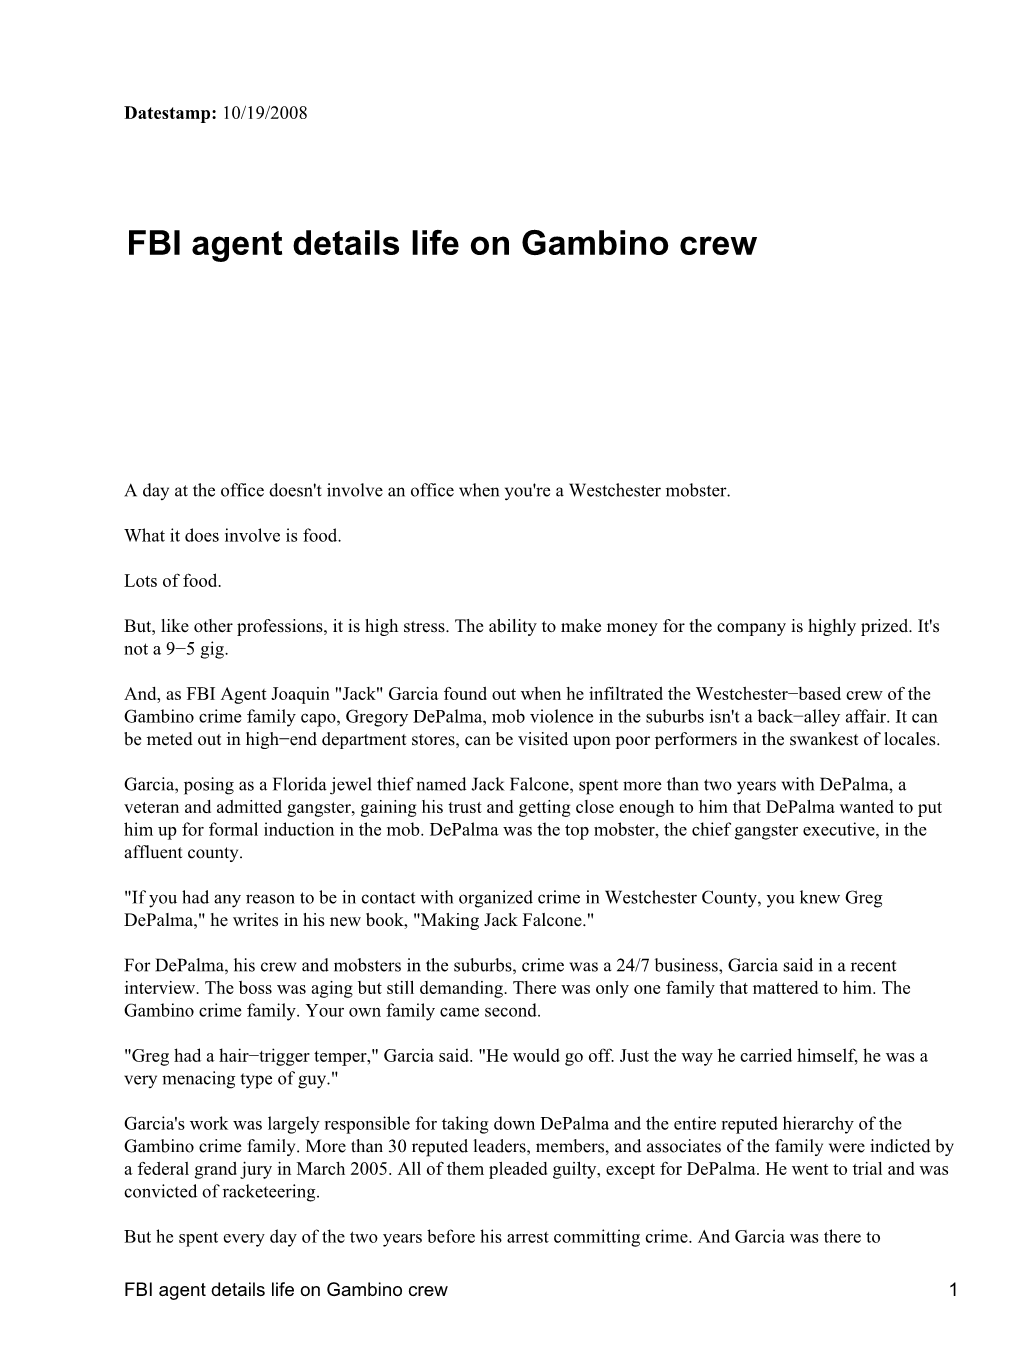 FBI Agent Details Life on Gambino Crew